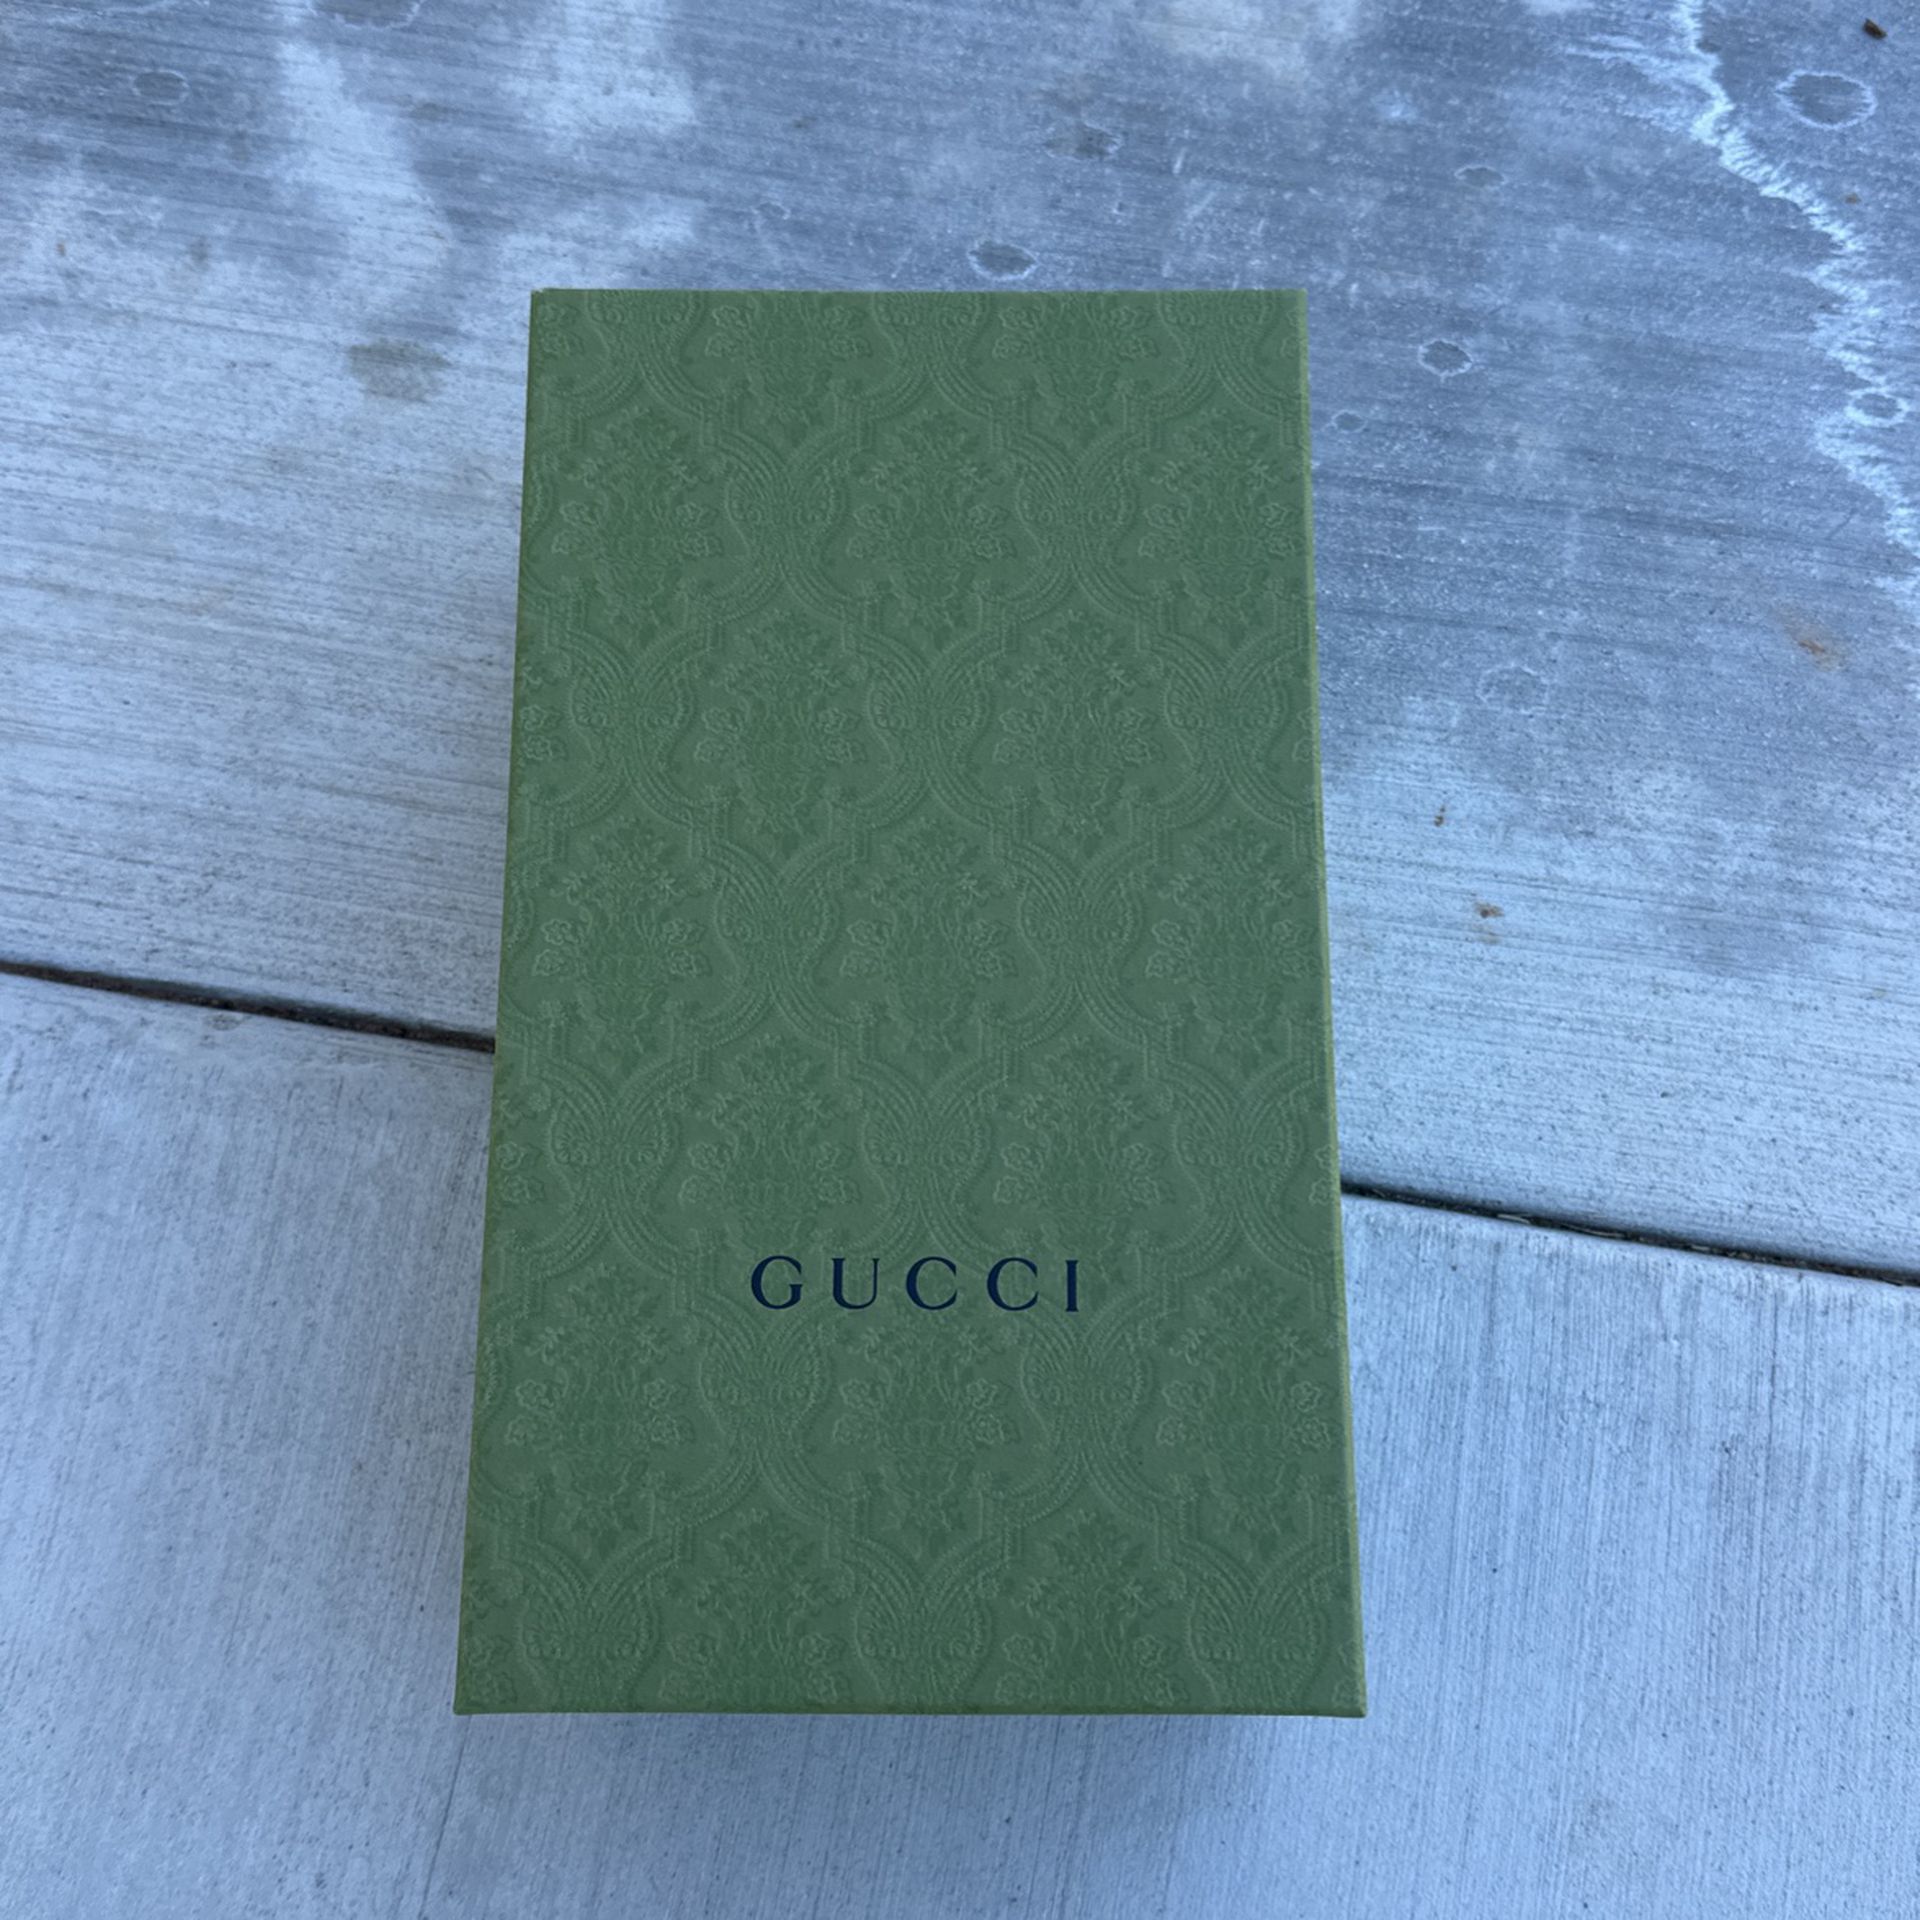 Gucci Shoe Box And Shoe Bag